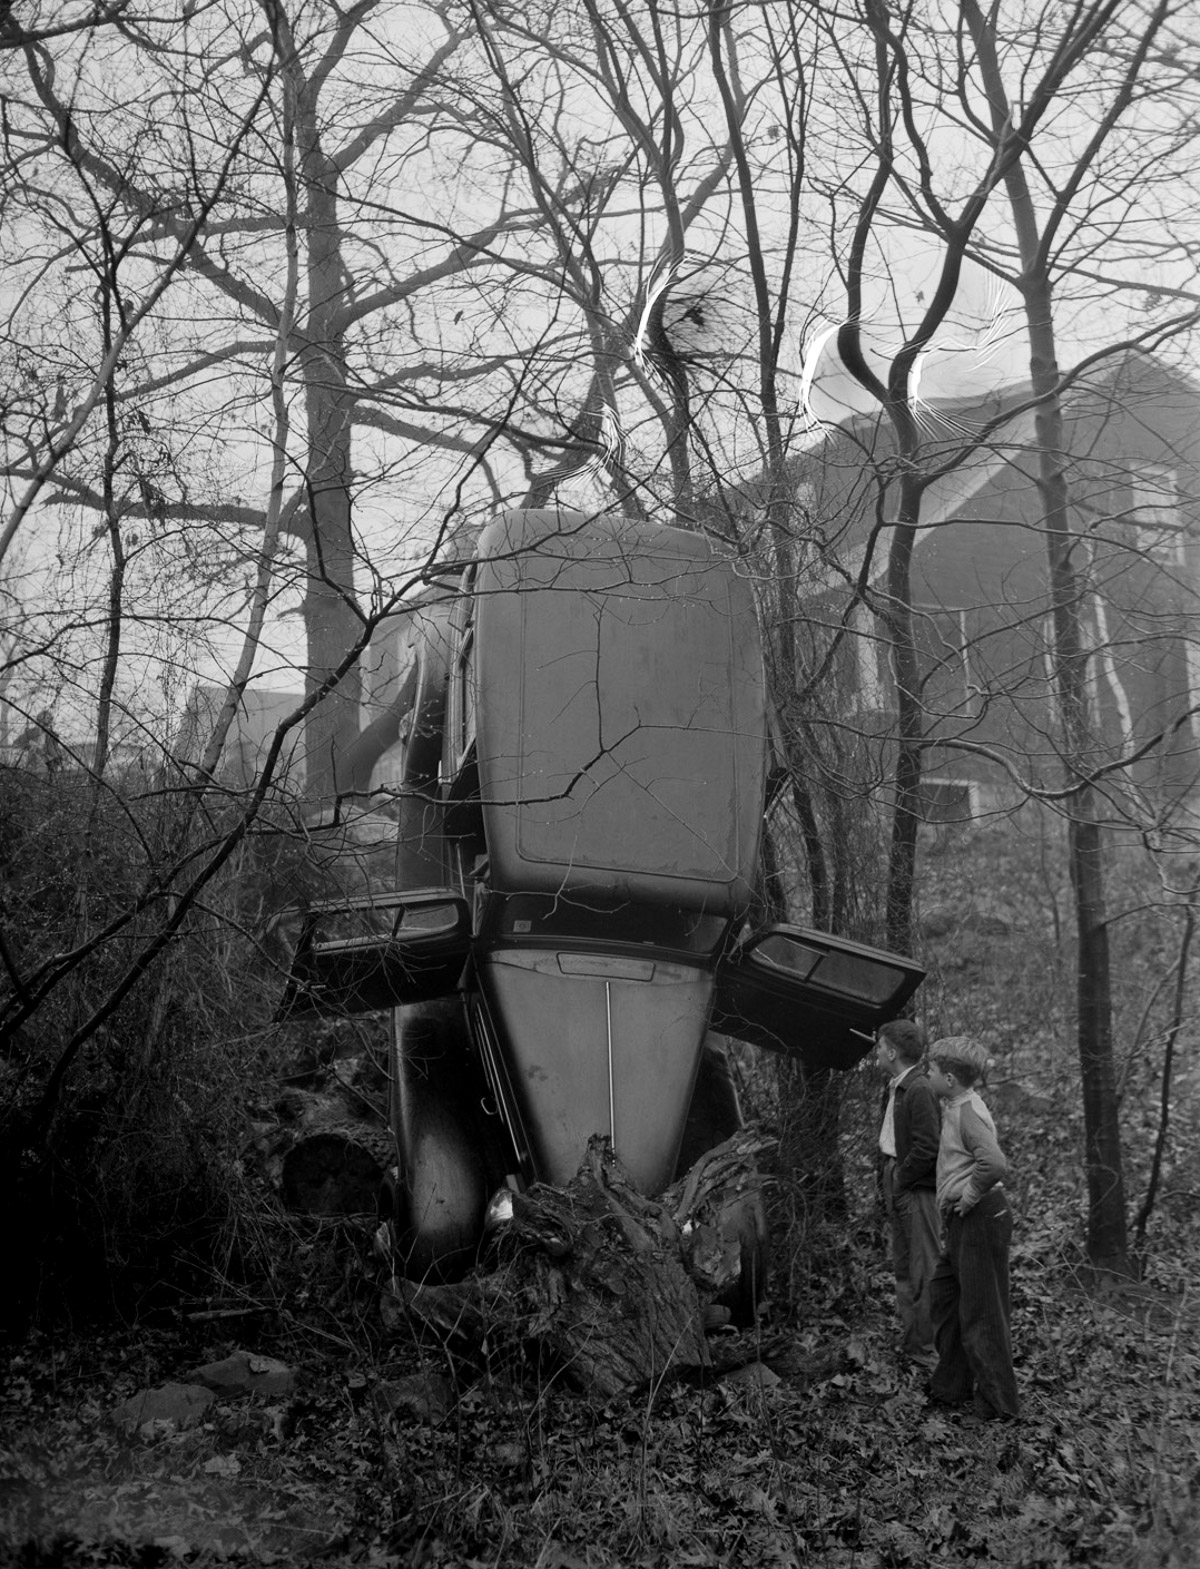 Автомобильные аварии Бостона в 1930-х годах от фотографа Лесли Джонса